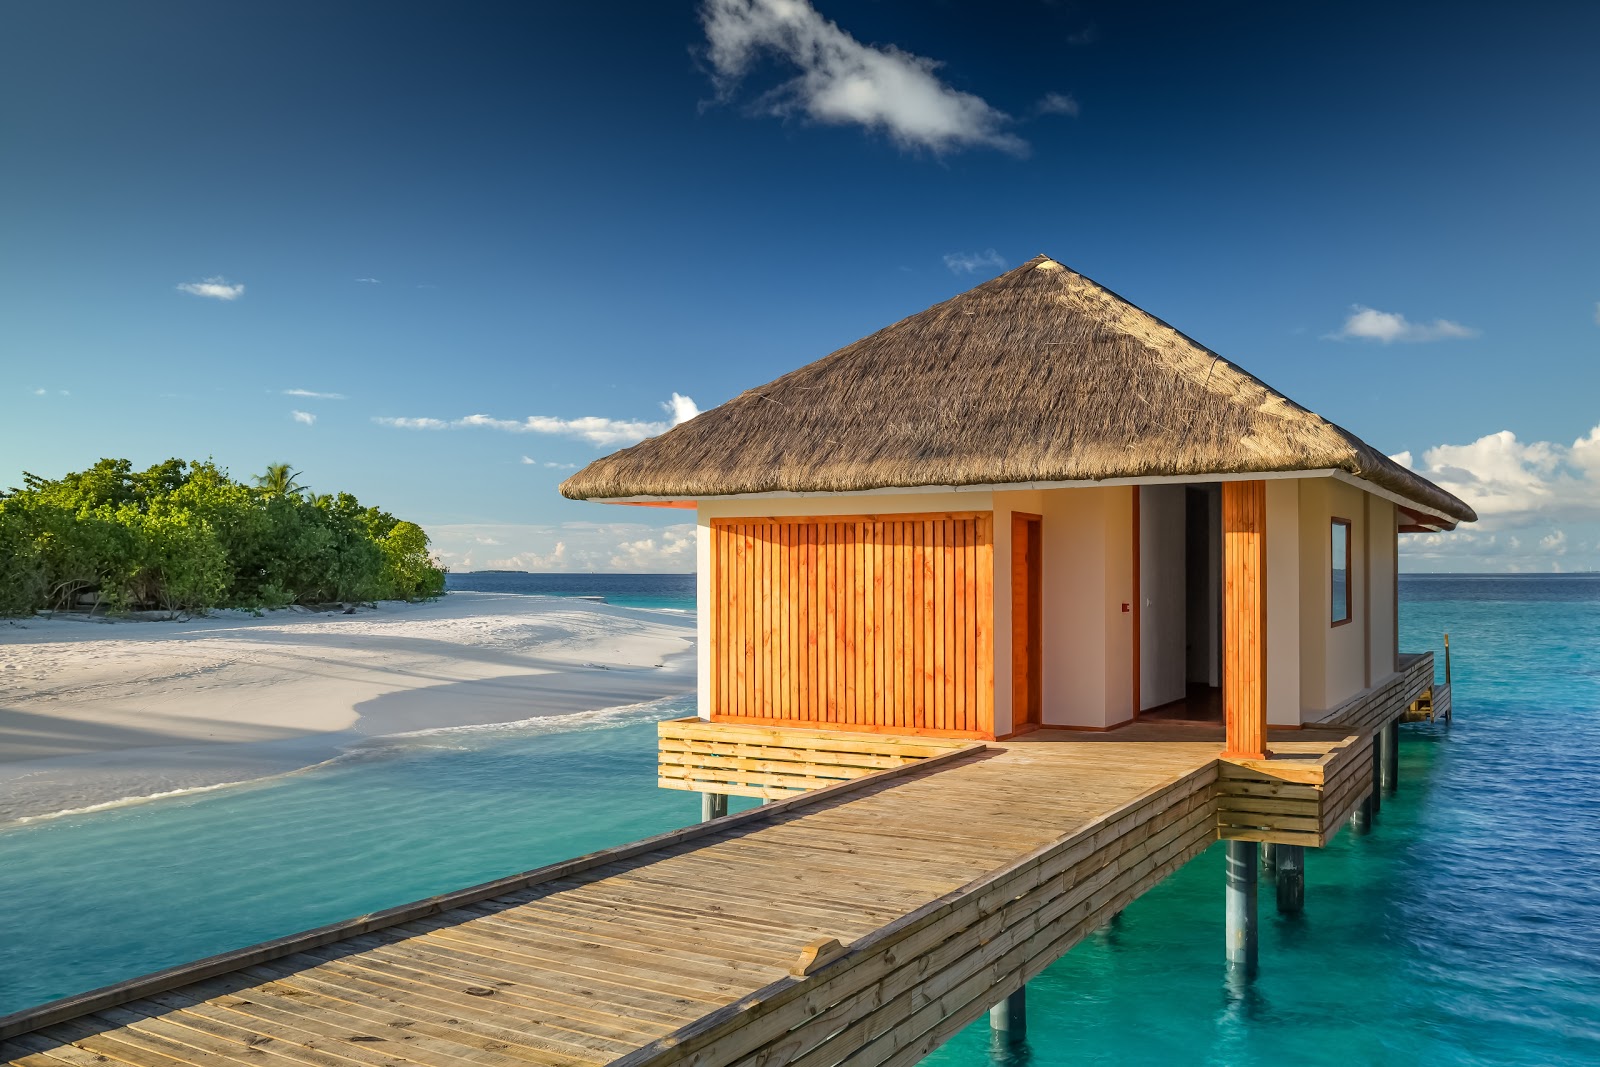 Foto de Kudafushi Resort island - lugar popular entre los conocedores del relax